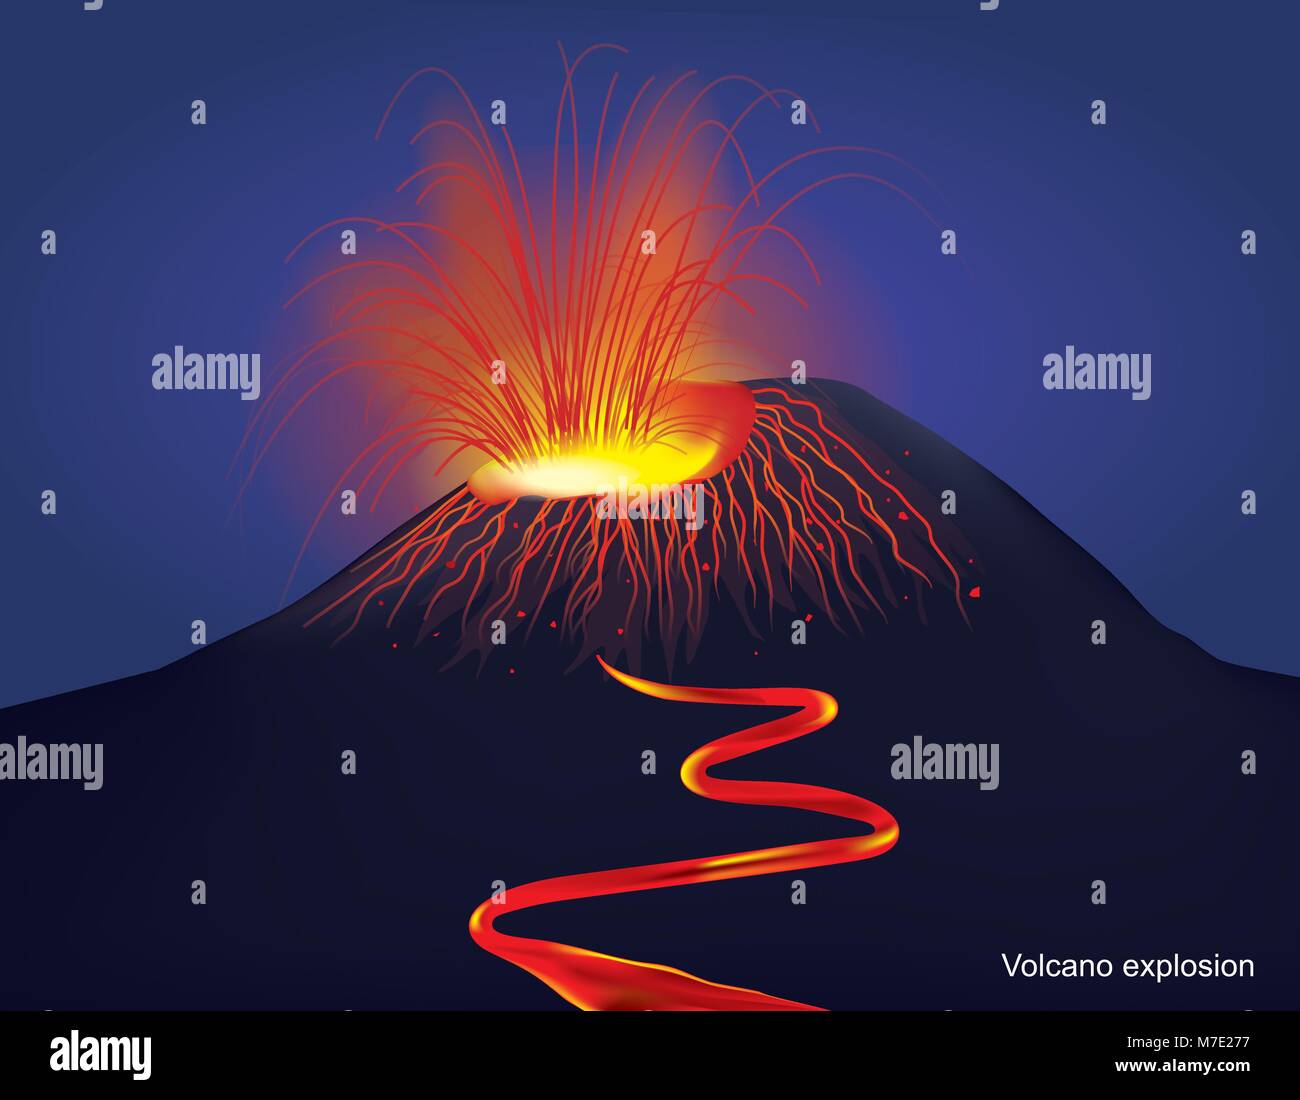 Plus la perception commune d'un volcan est d'une montagne conique, crachant de la lave et de gaz toxiques à partir d'un cratère à son sommet. Vector Illustration gr Illustration de Vecteur